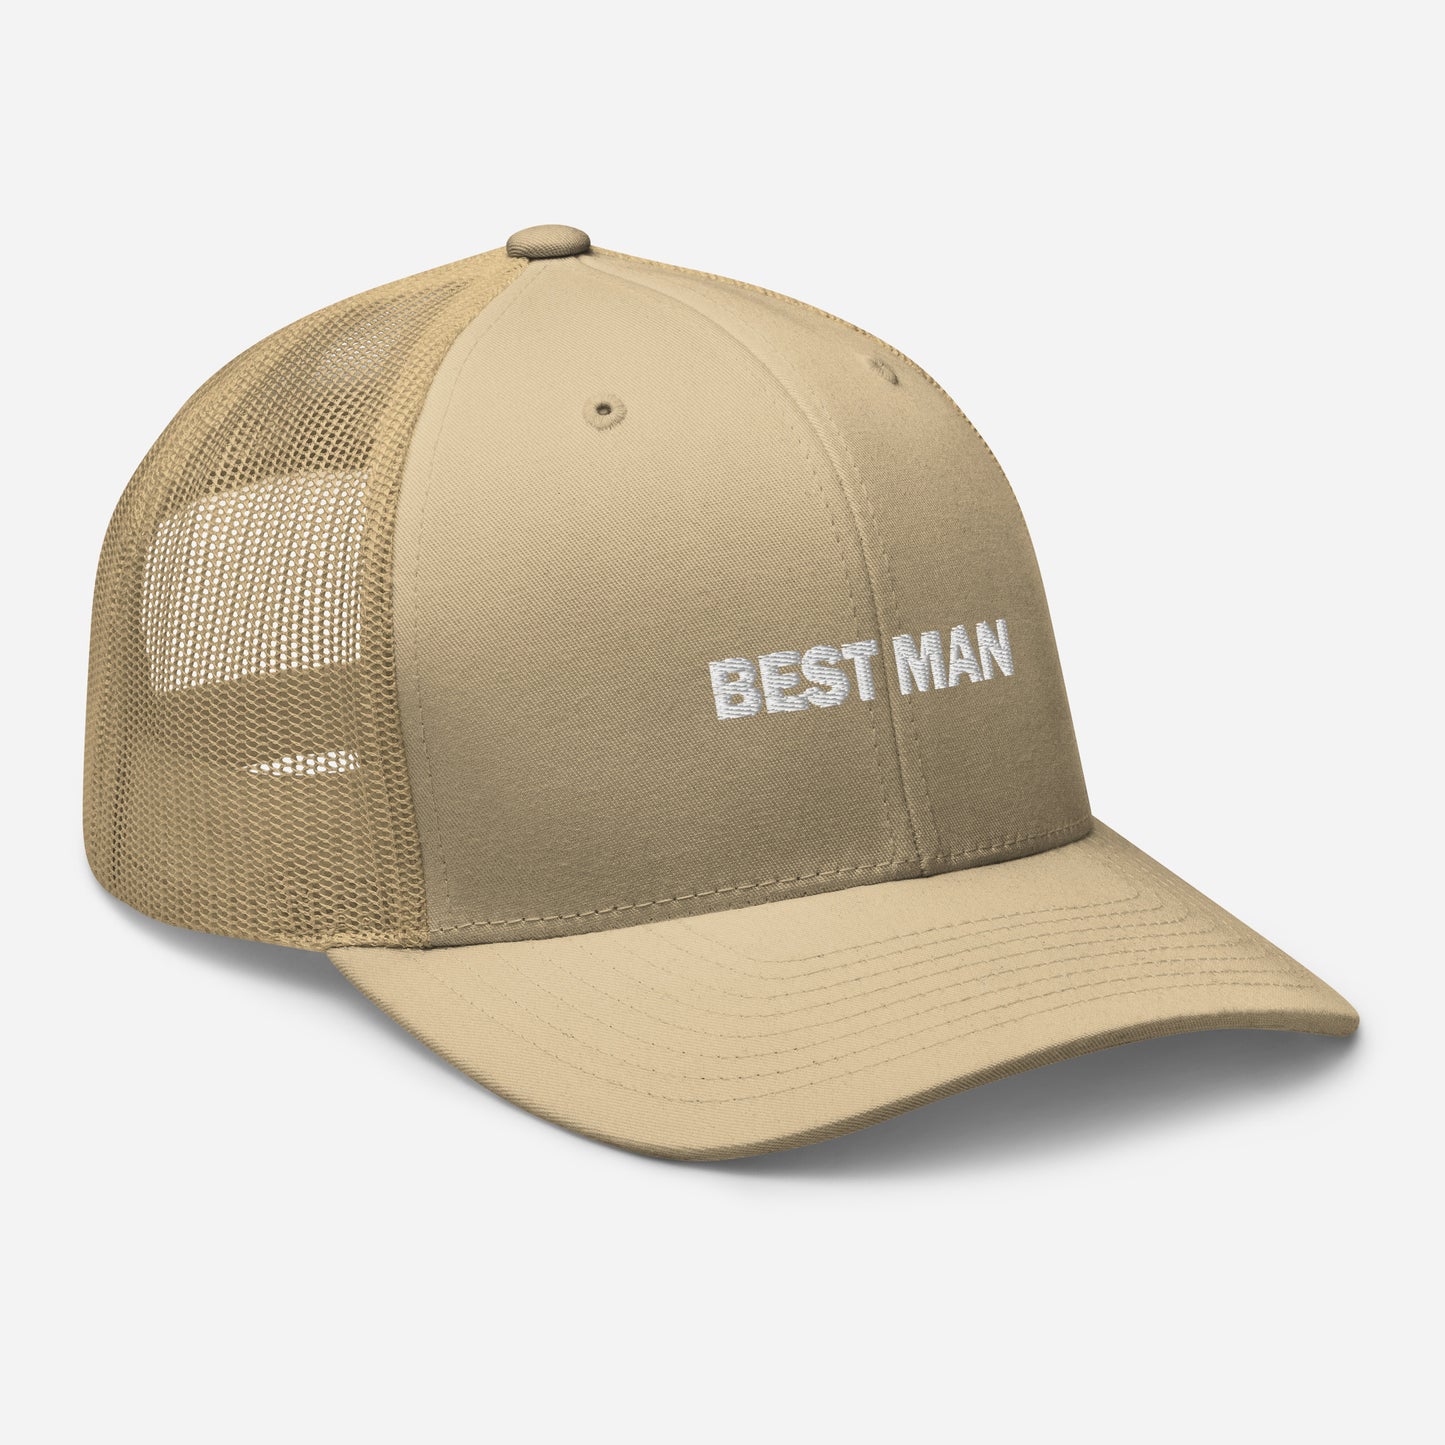 Mesh Cap with Best Man Symbol